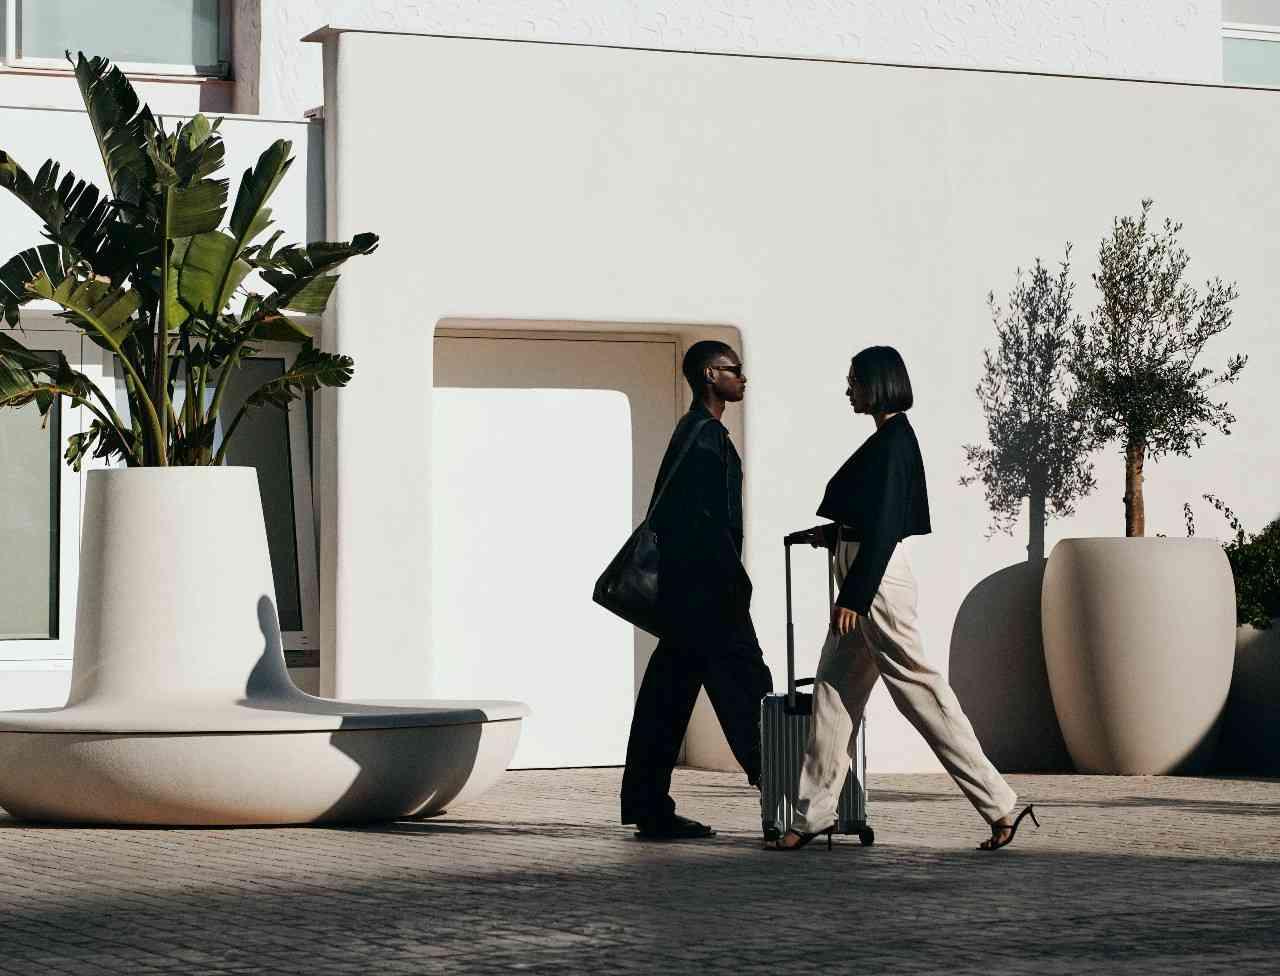 dos personas caminando afuera vestidas de blanco y negro